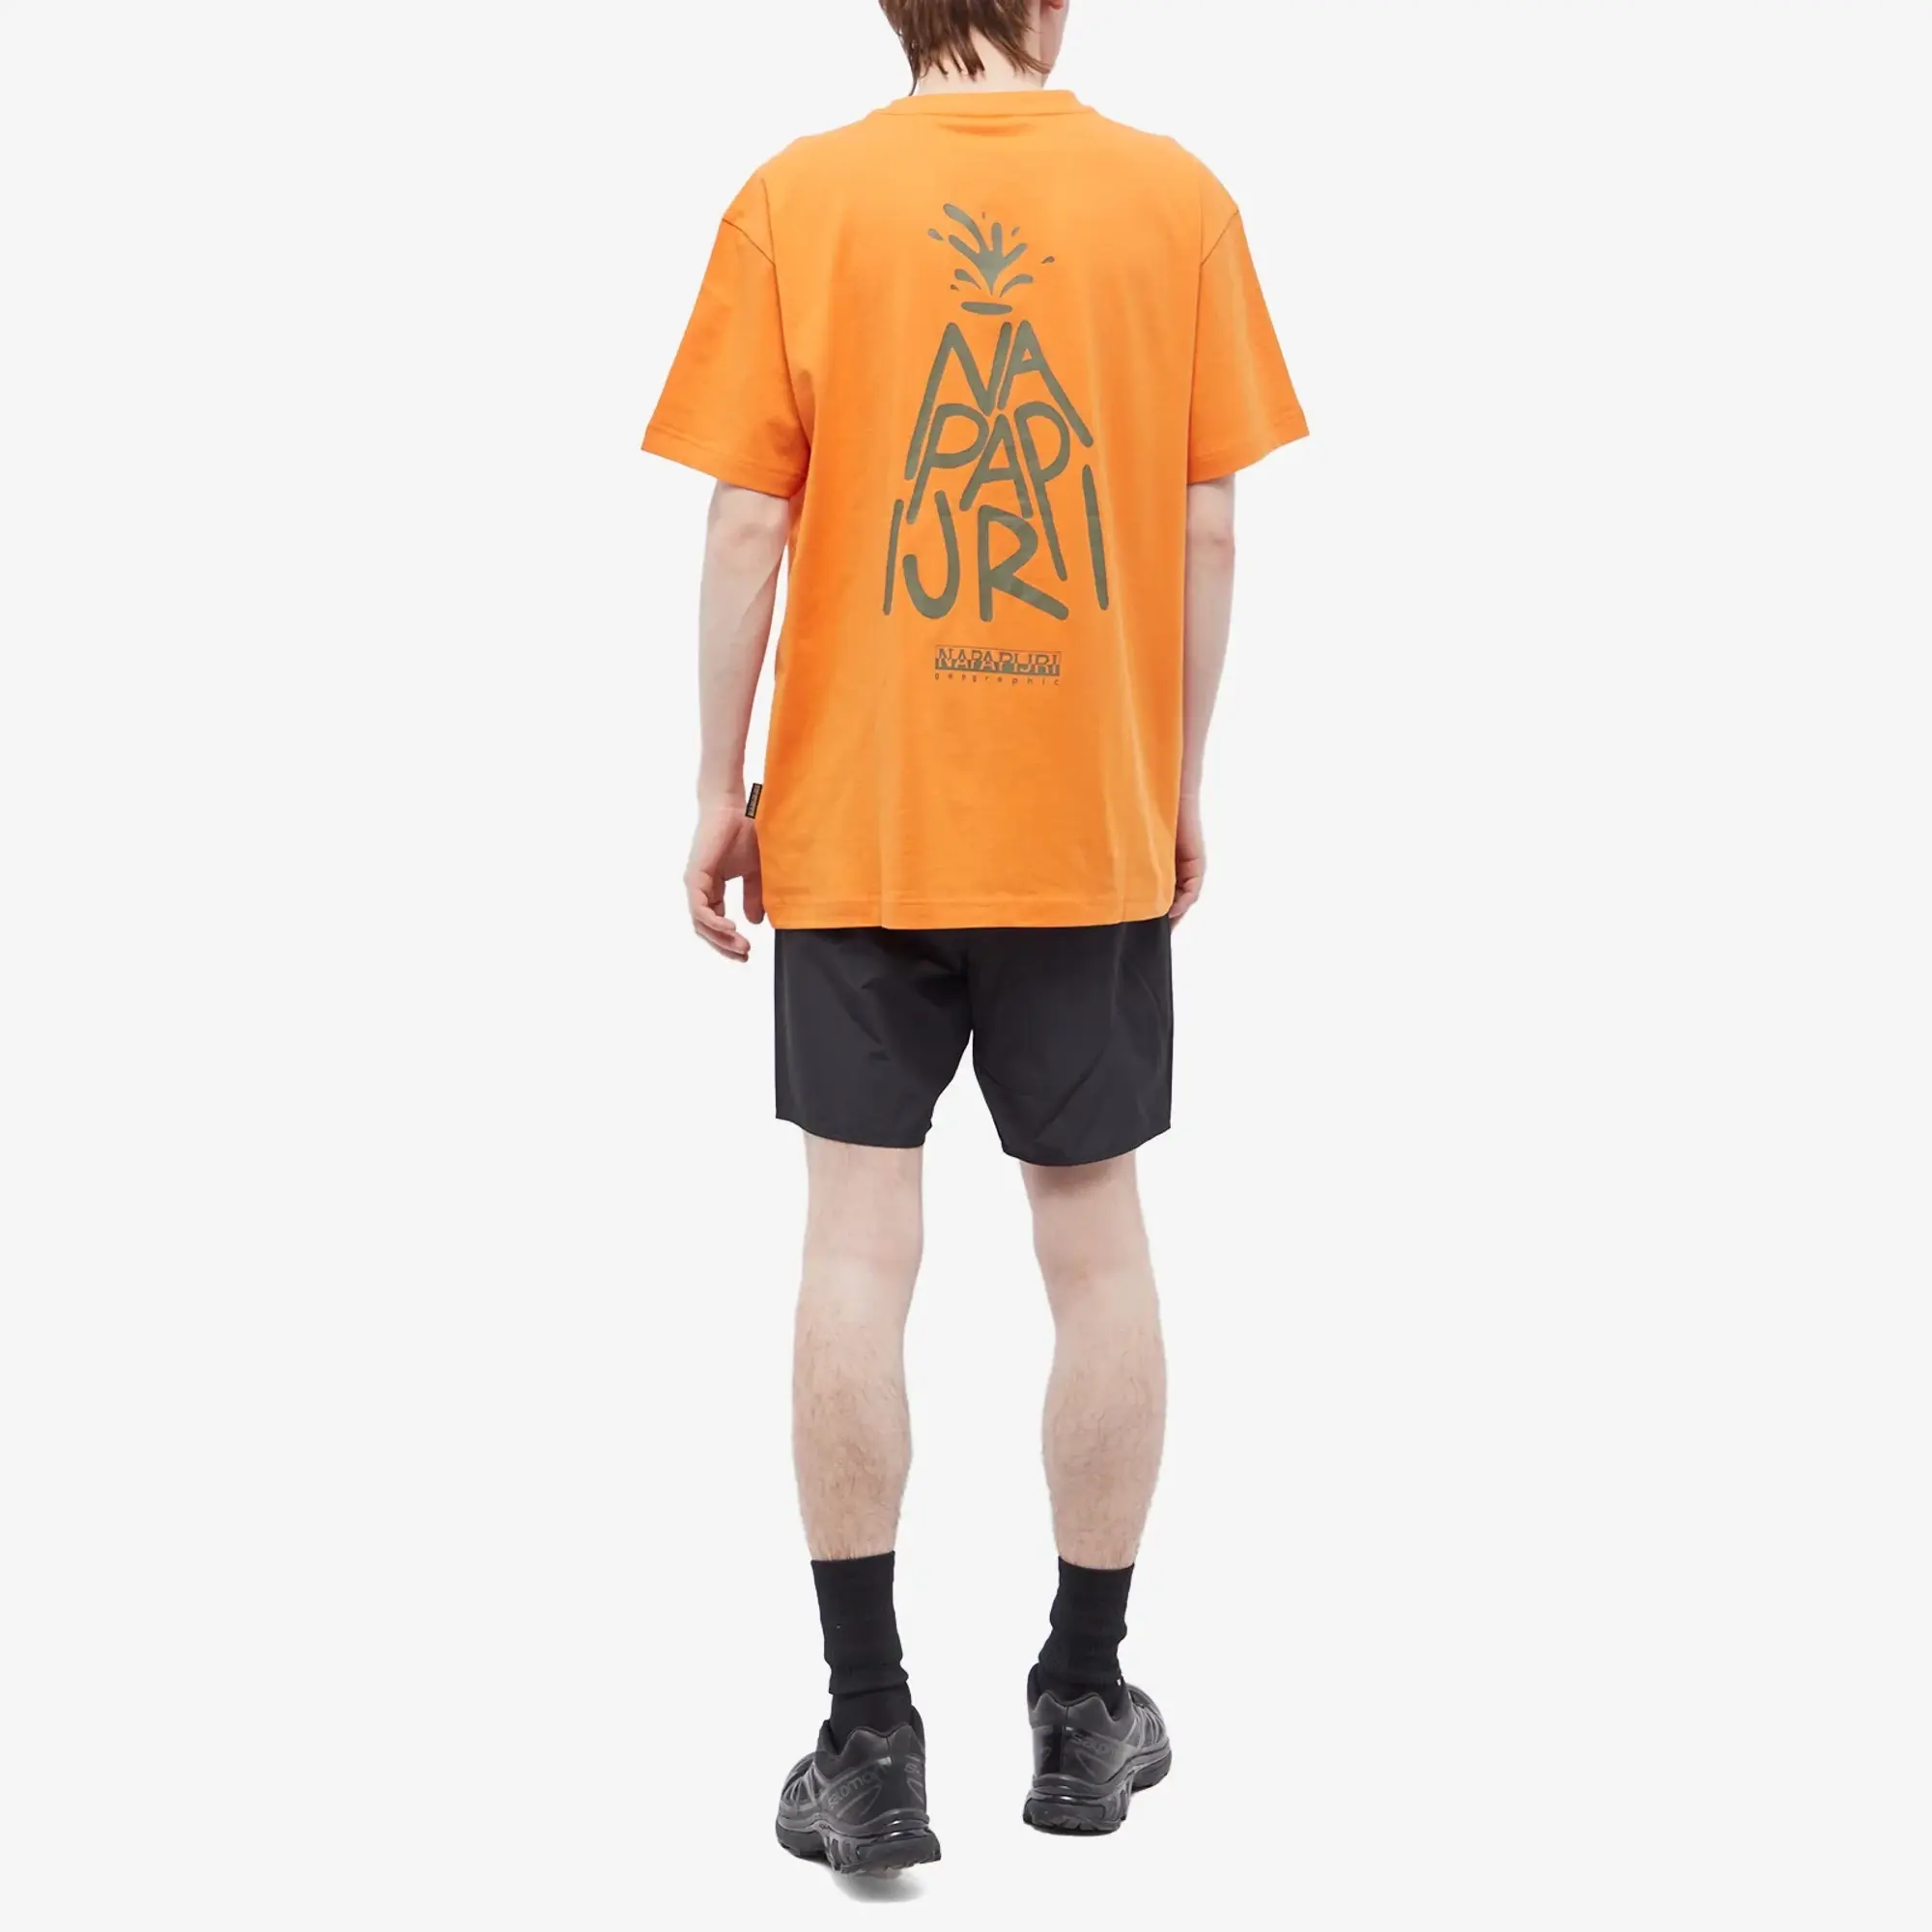 Napapijri Men's T-Shirt Orange